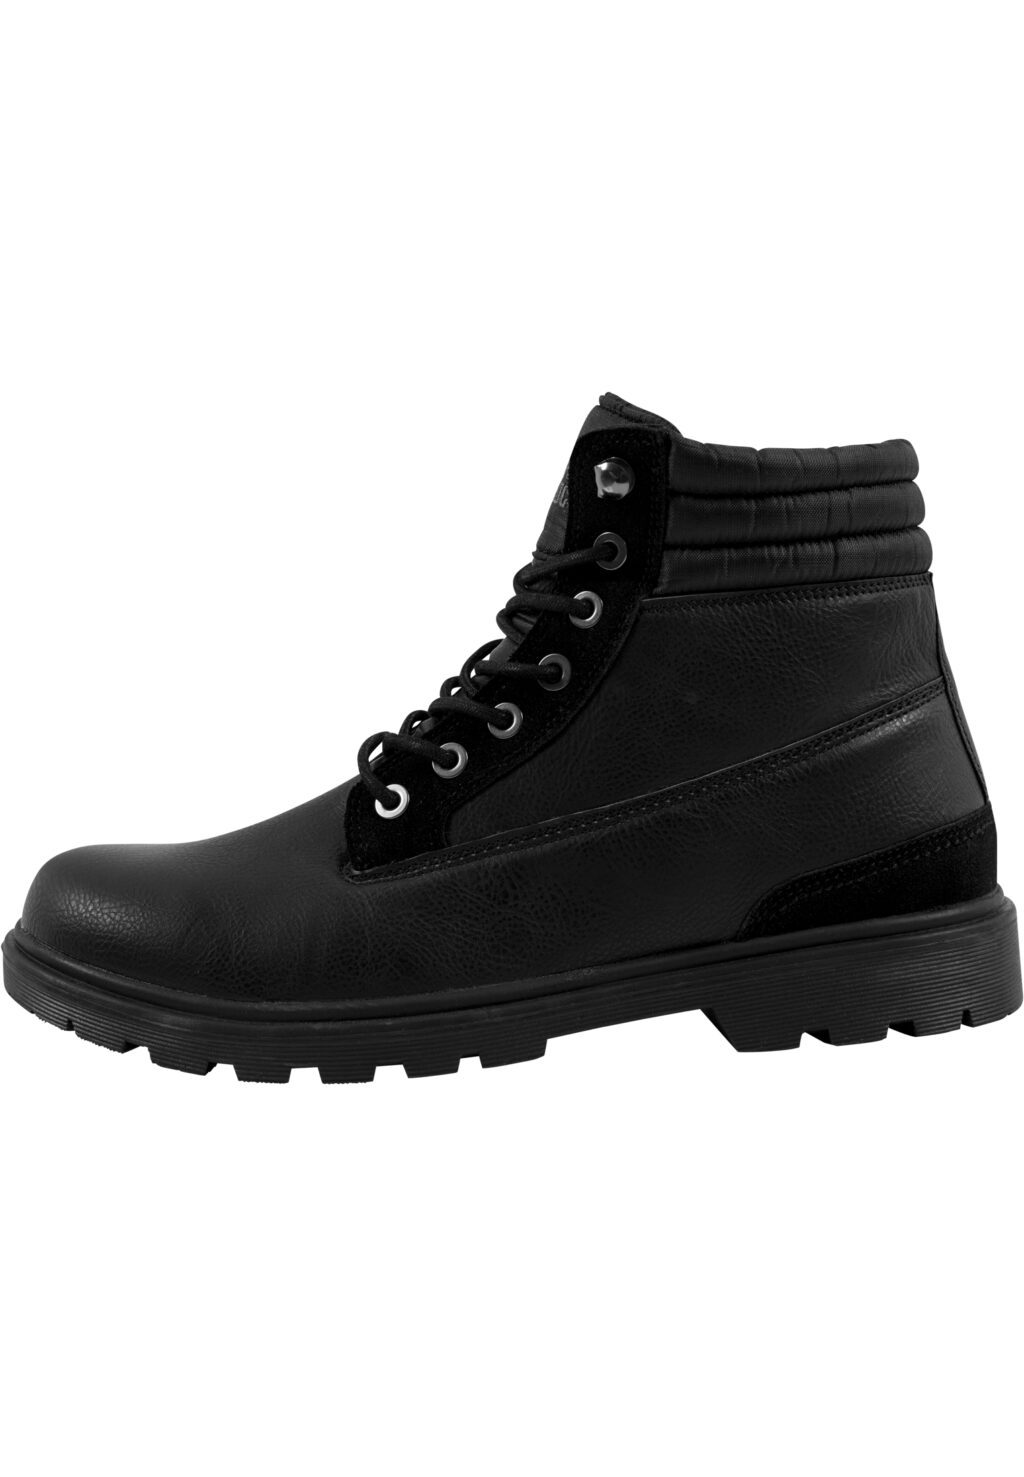 Winter Boots blk/blk TB1293